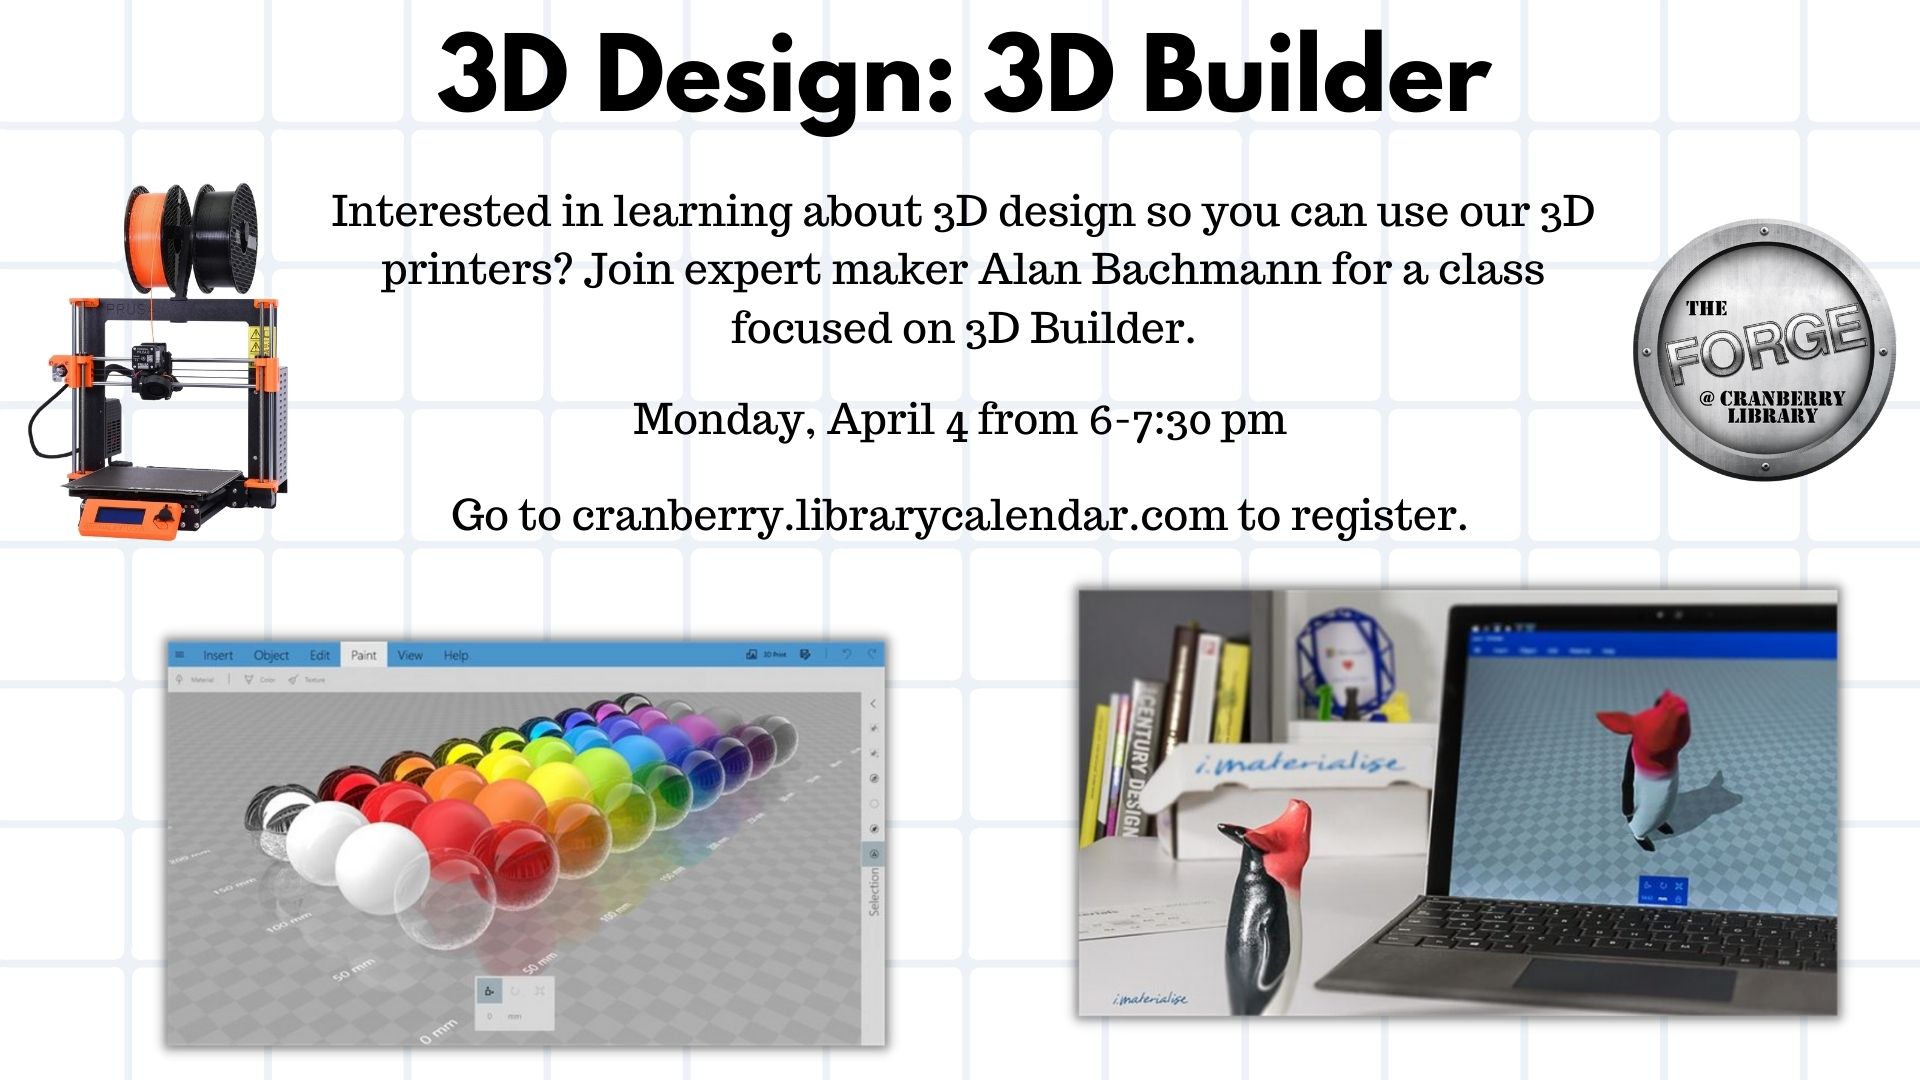 Flyer for 3D Design 3D Builder class